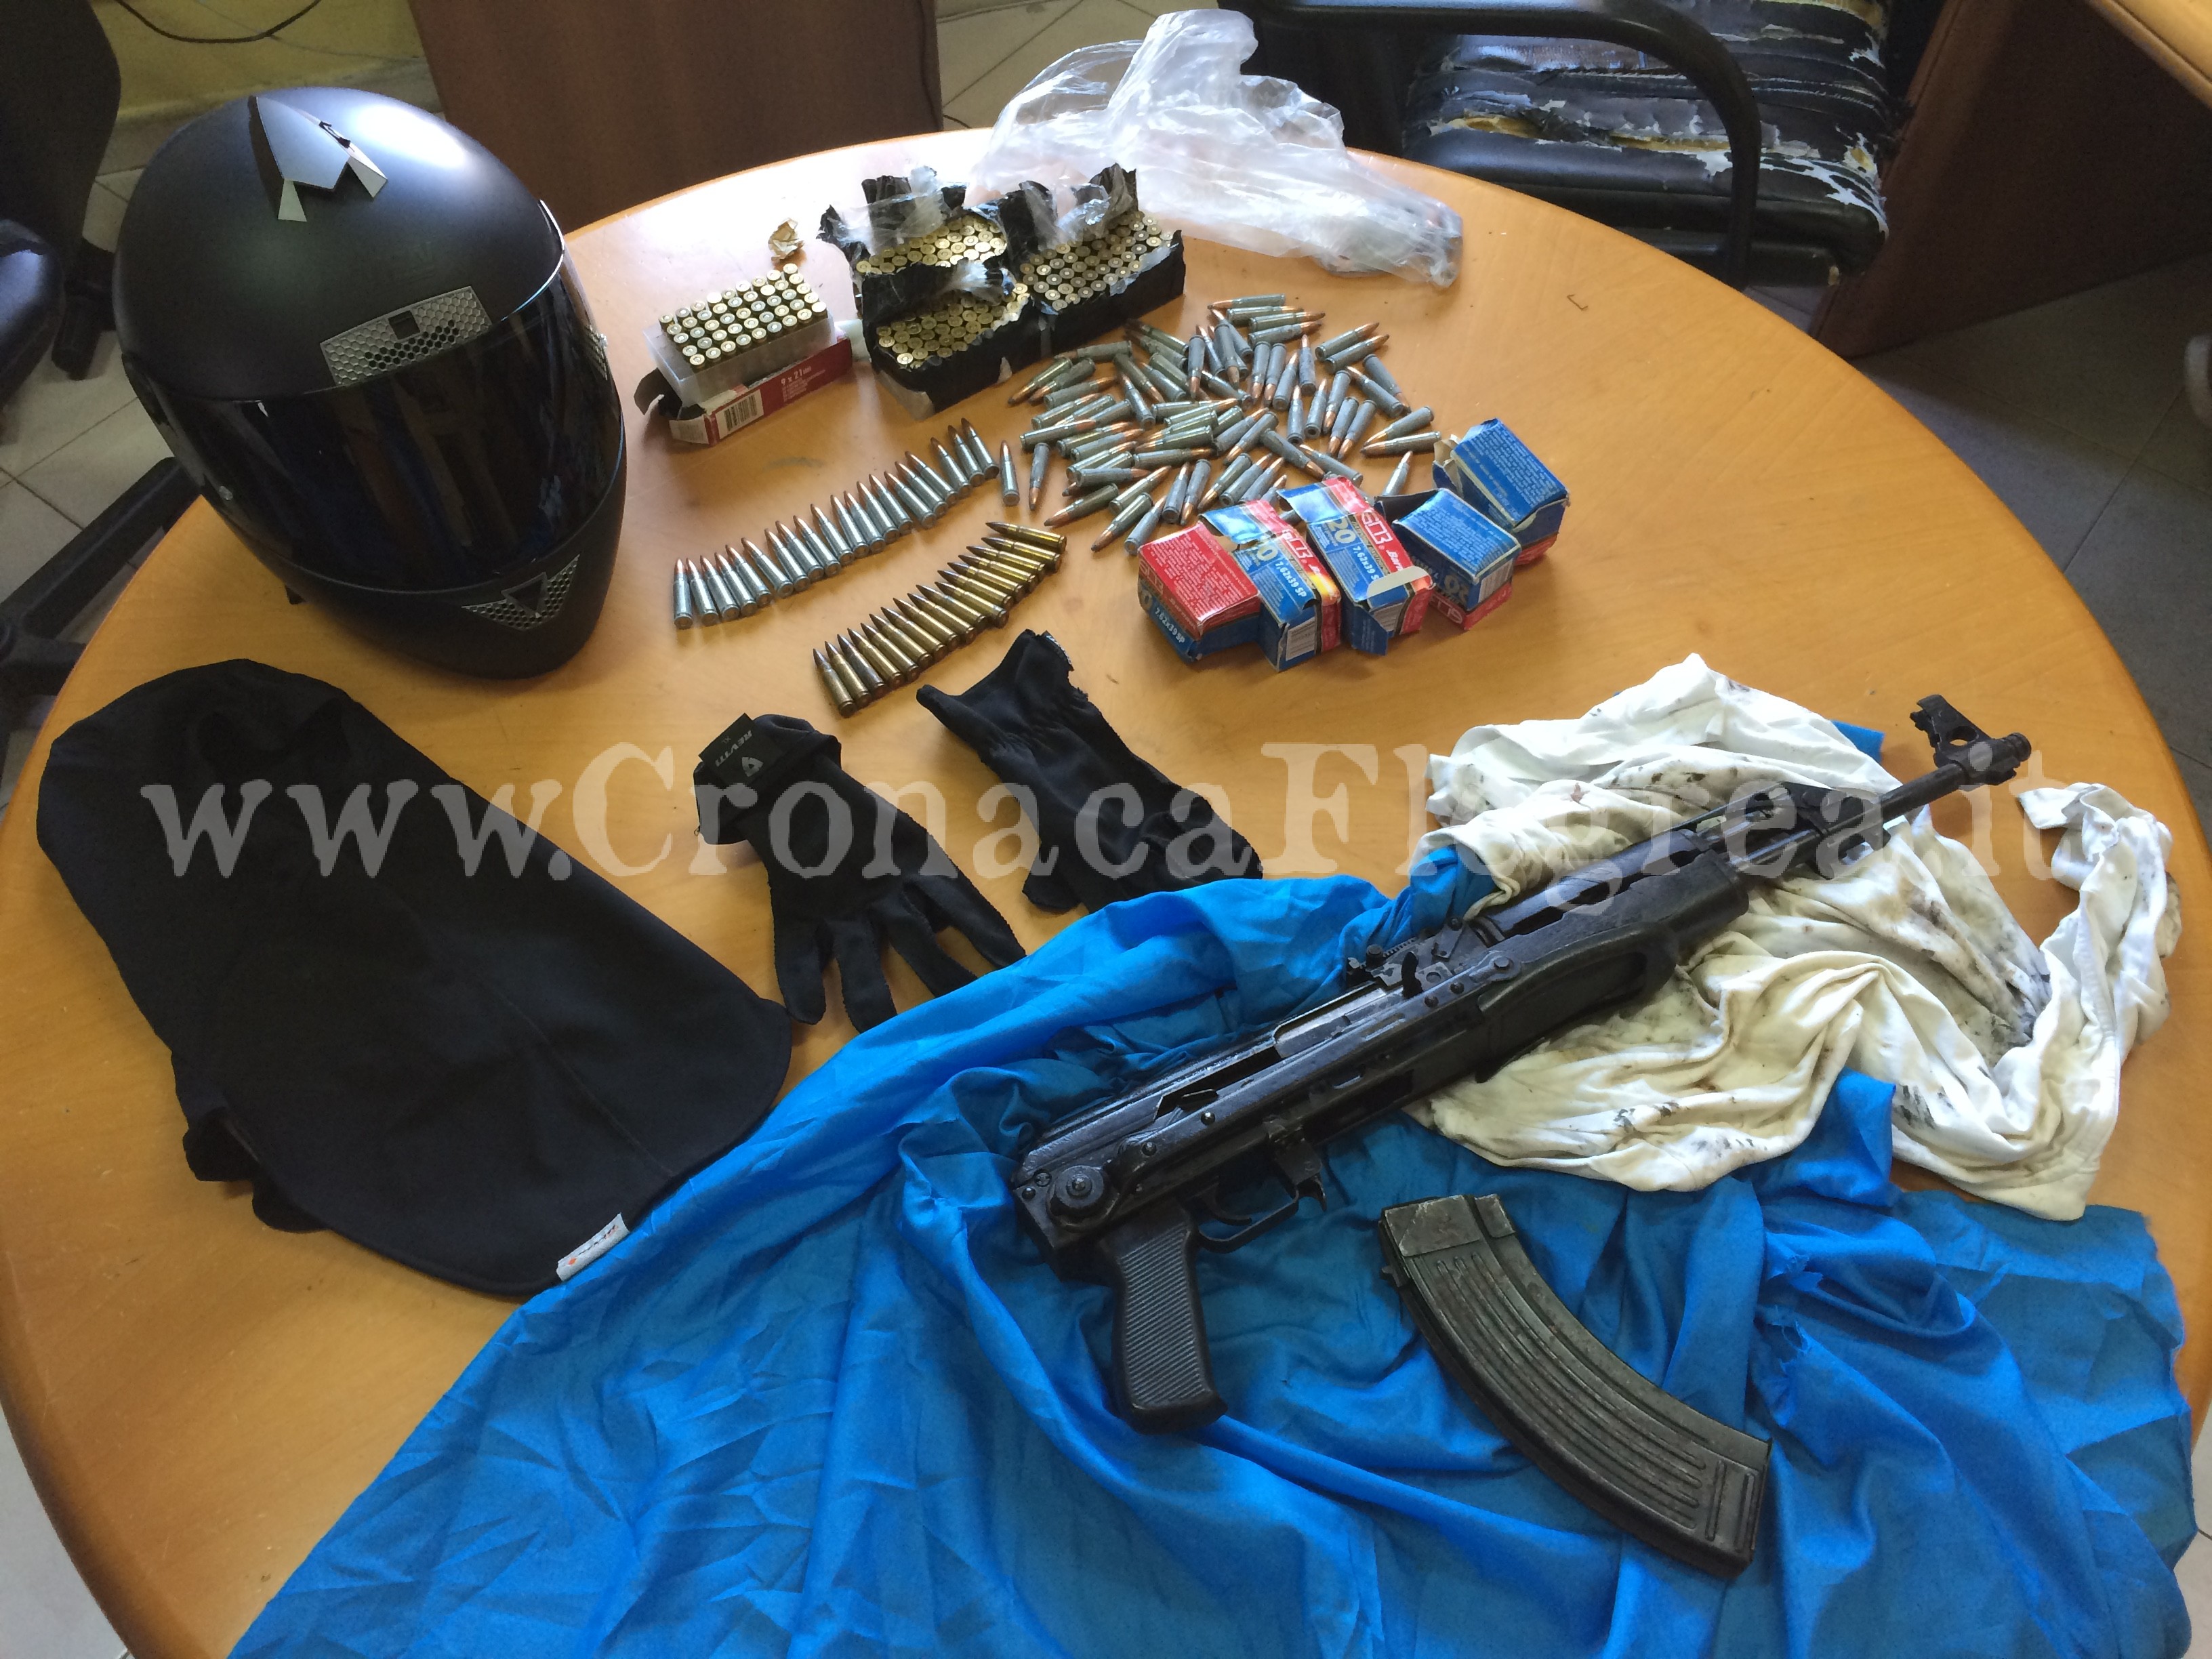 Trovato con un Kalashnikov nel bagno: arrestato 31enne